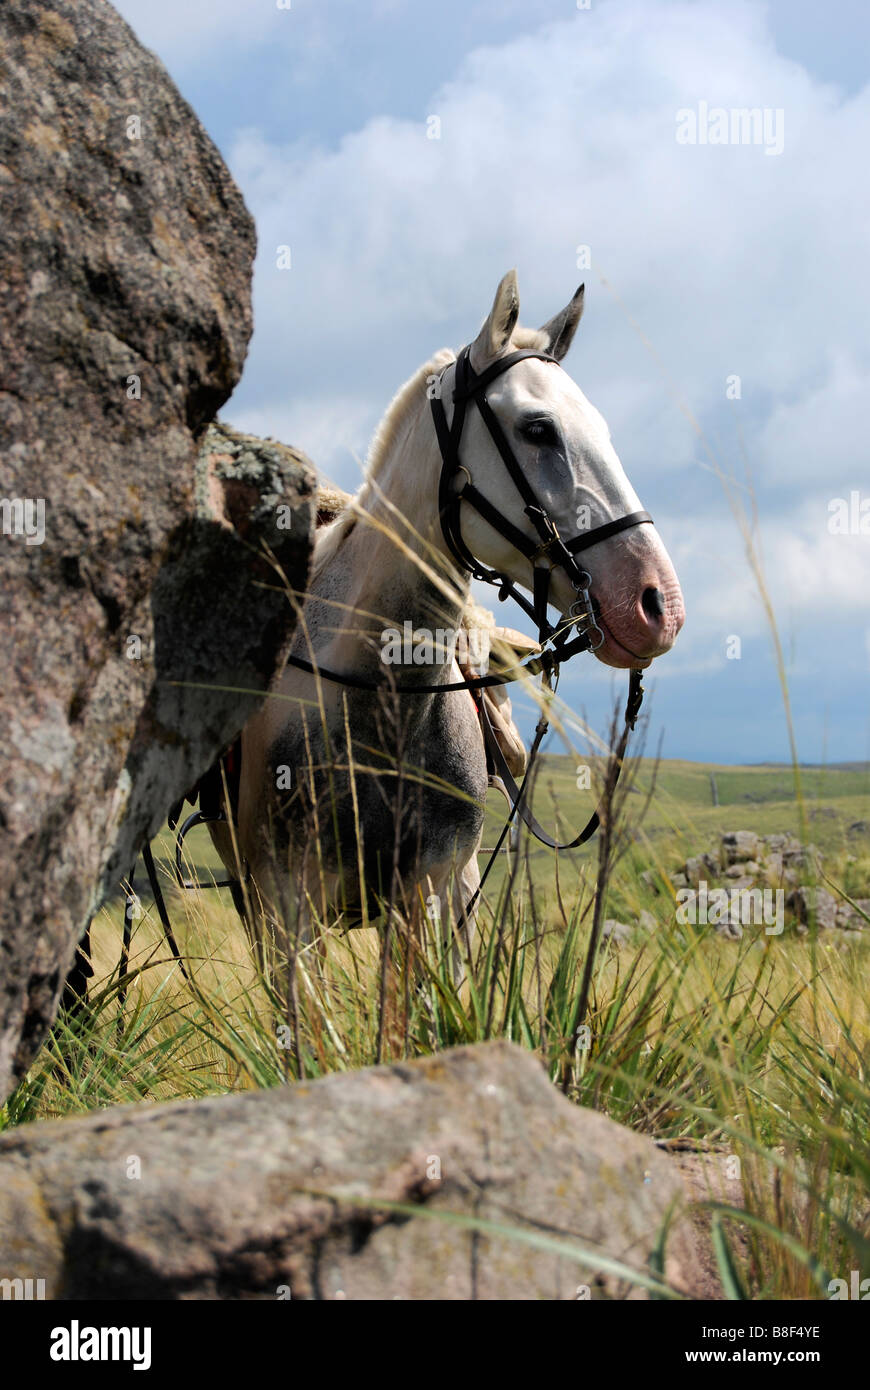 Sella cheval gris s'attendre patiemment dans les herbes hautes à côté d'un grand rocher, avec une vue sur les collines derrière les champs. Banque D'Images